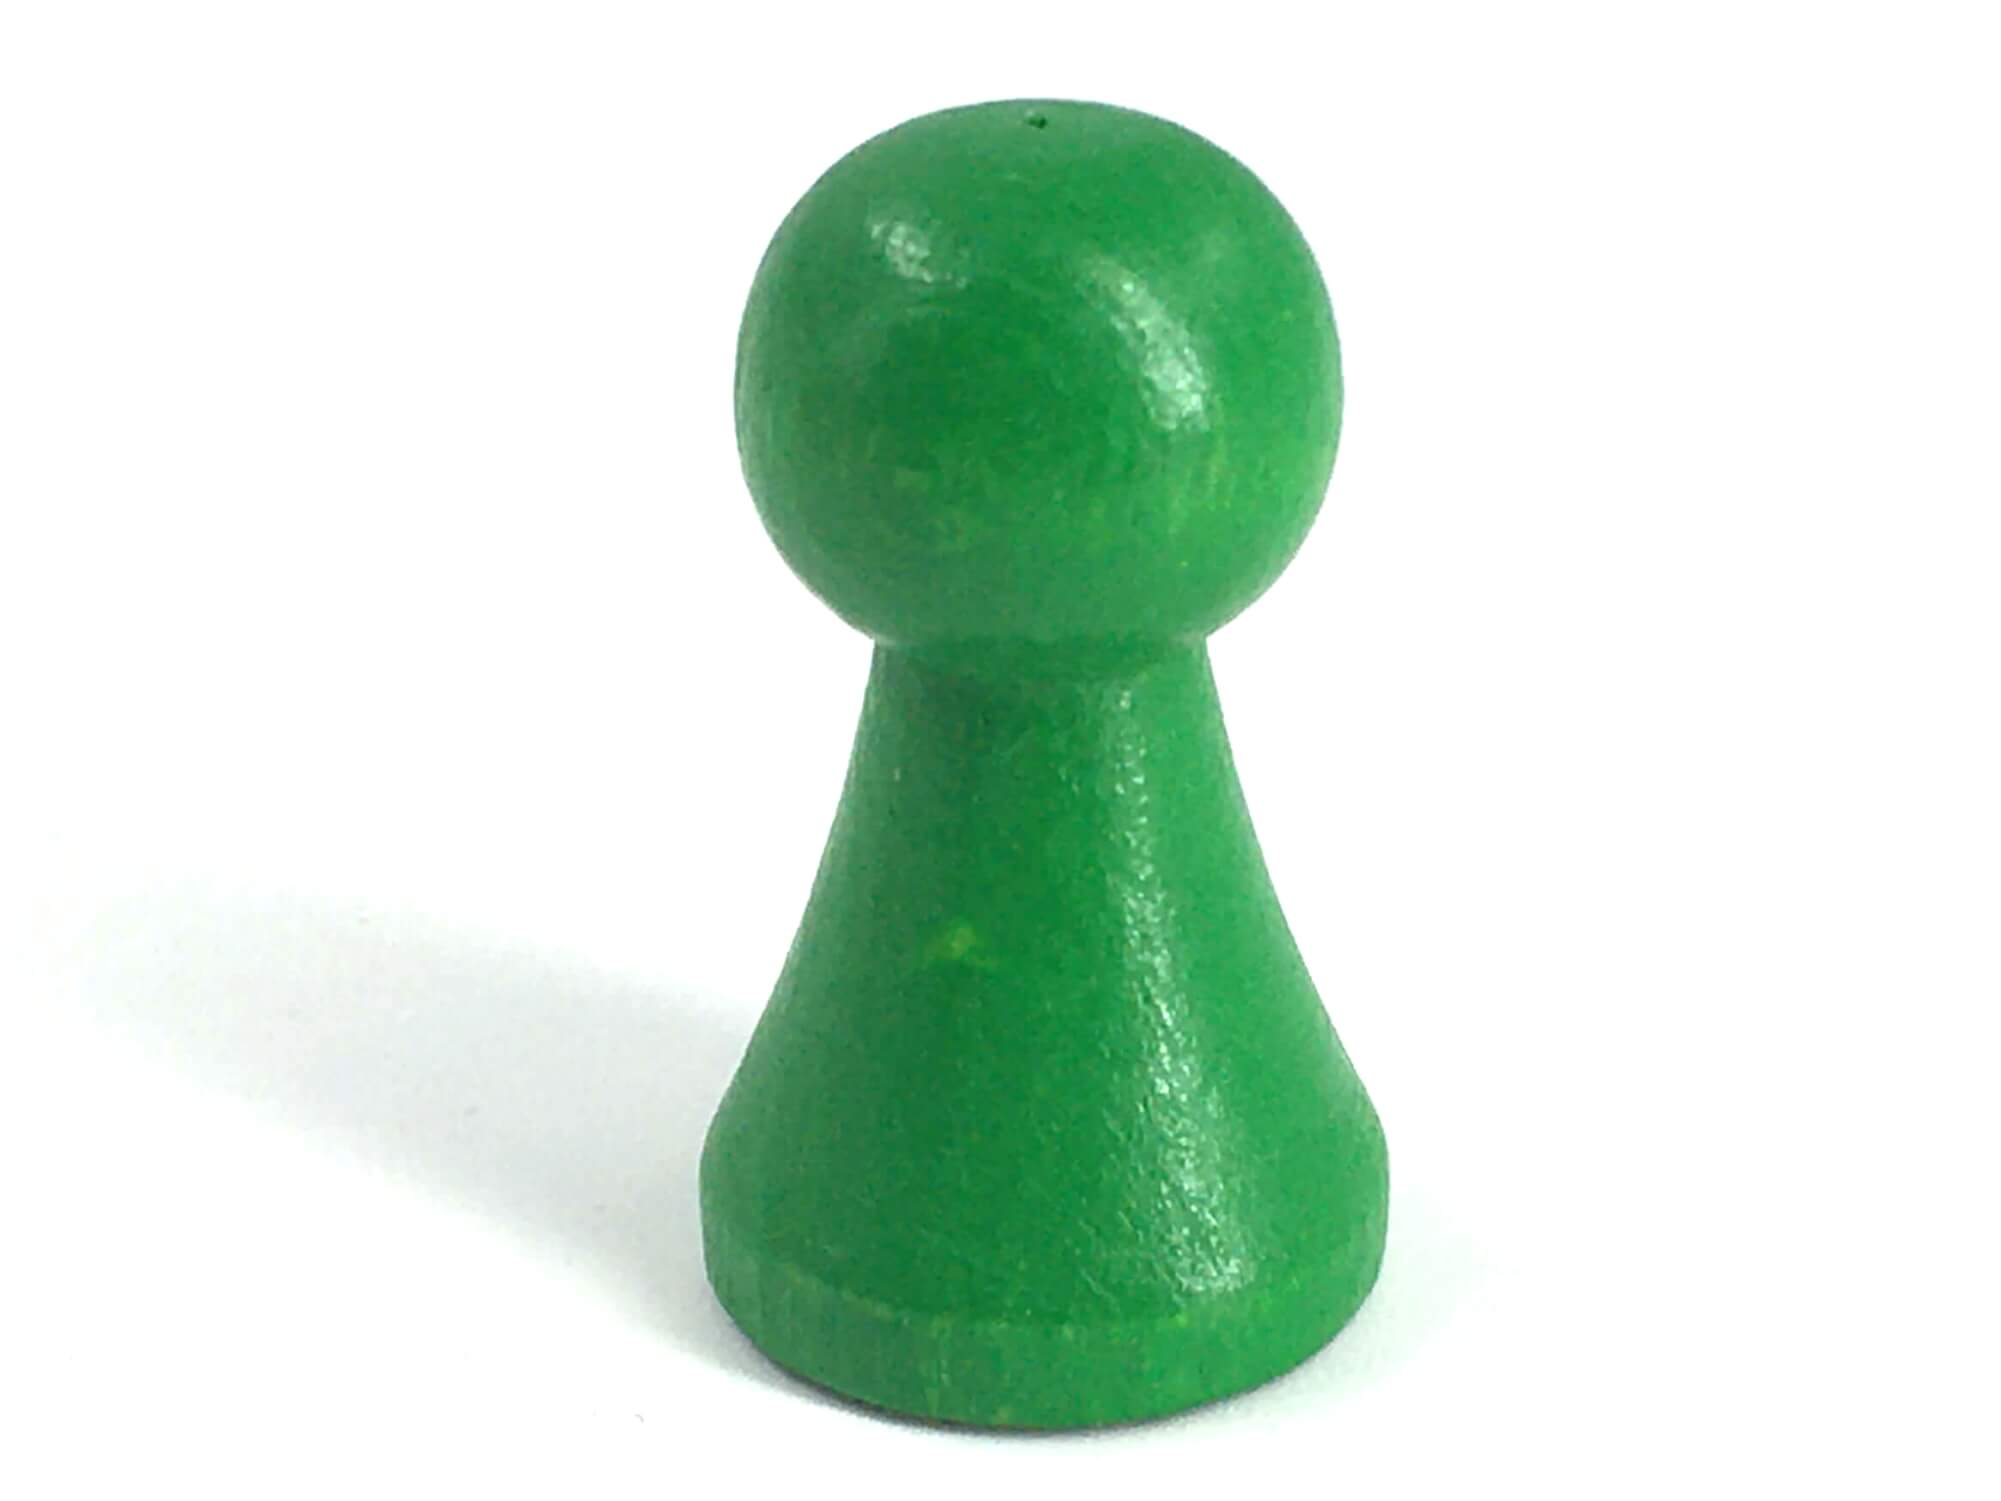 Lesena igralna figura zelena15 x 27 mm